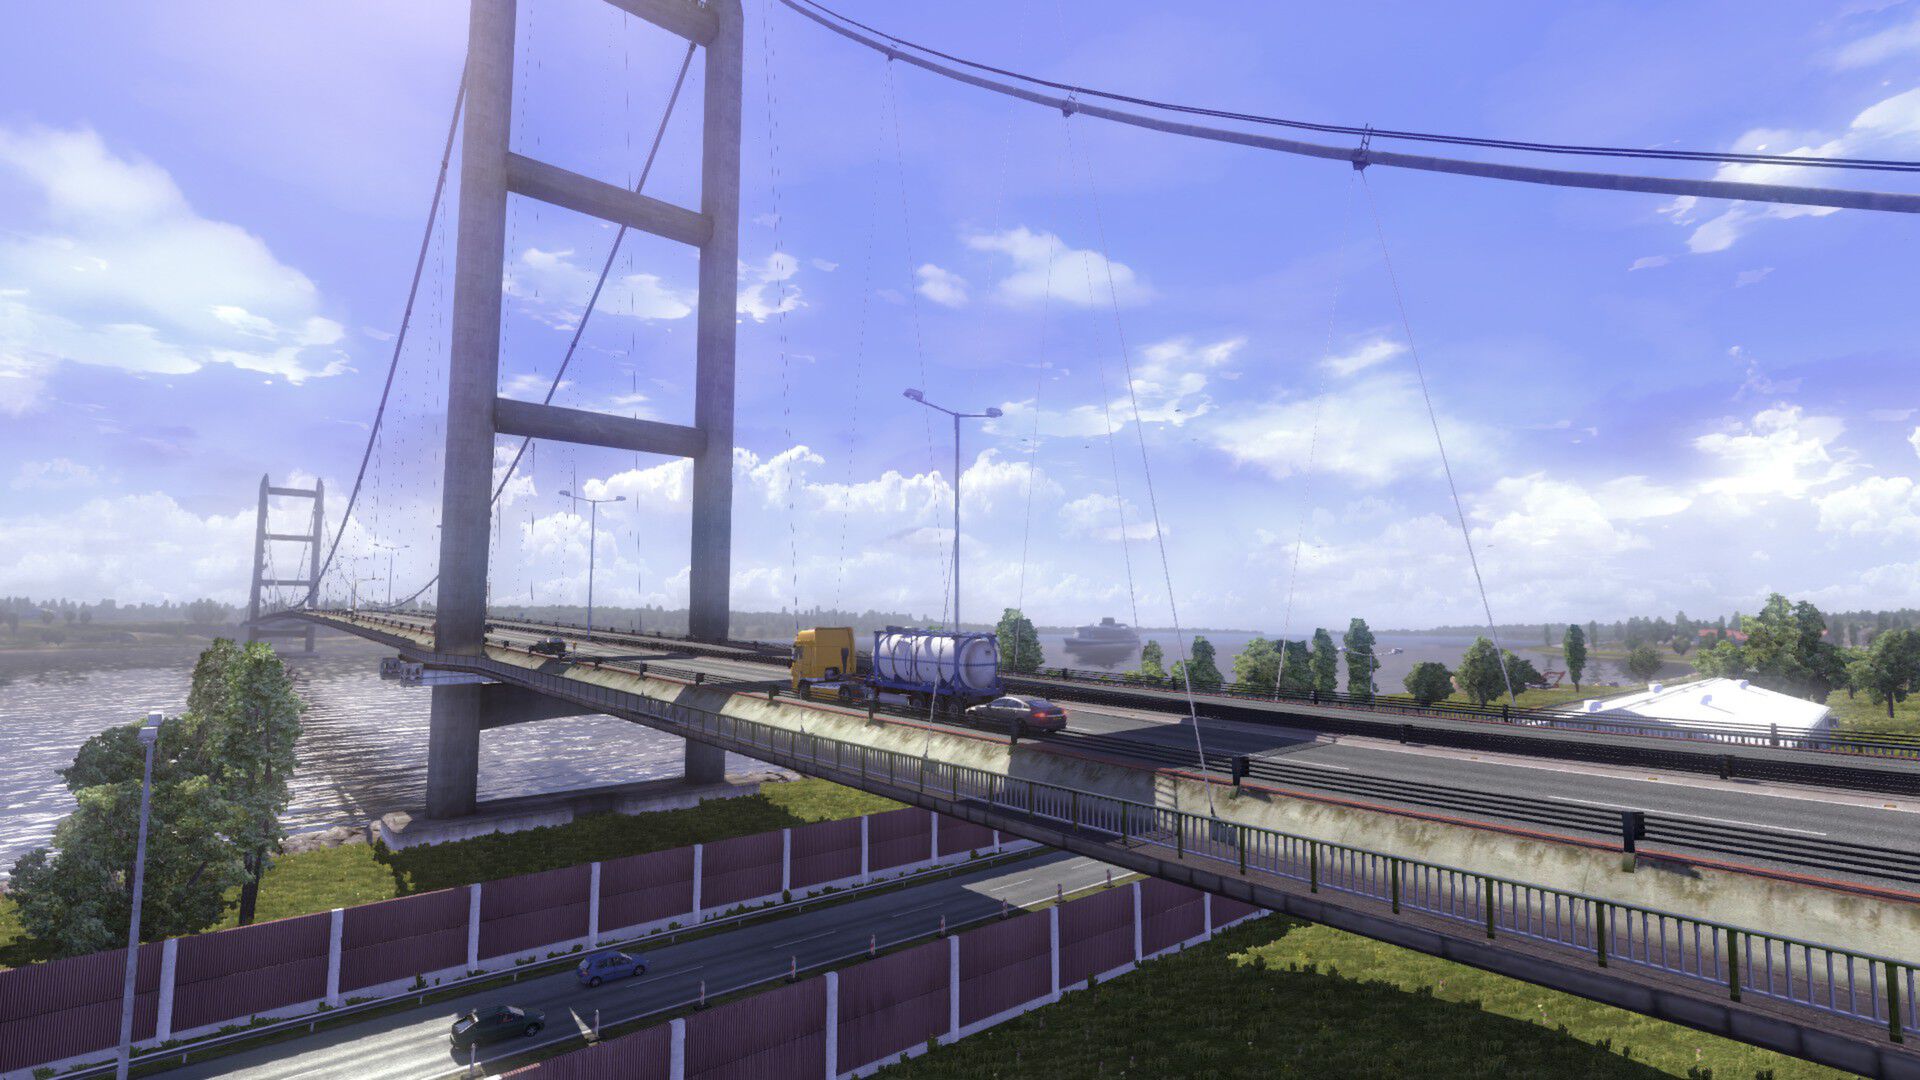 Euro Truck Simulator 2 Edition Spéciale sur PC, tous les jeux vidéo PC